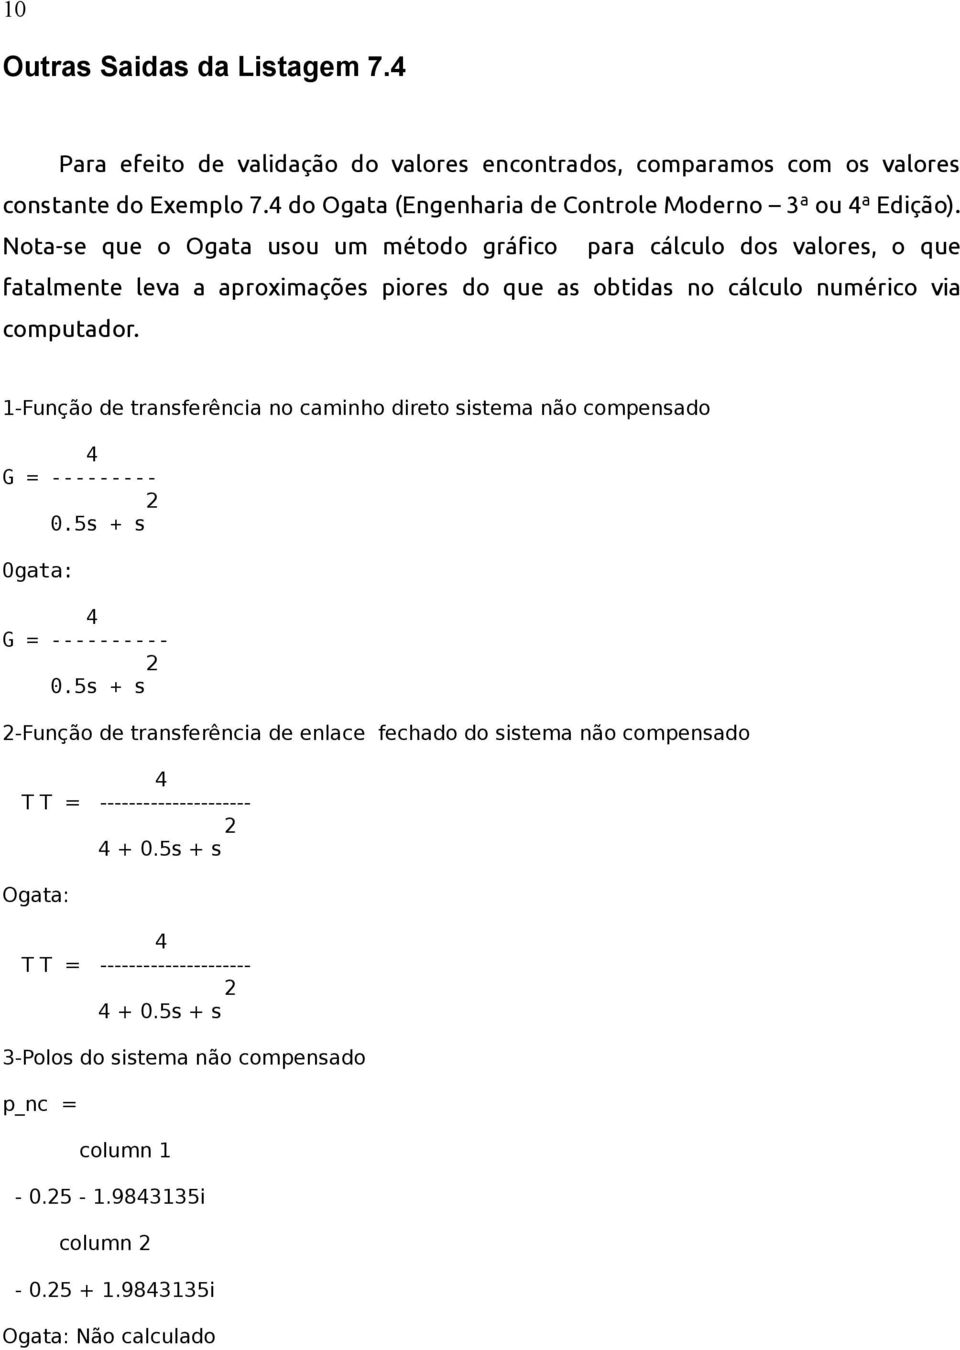 Nota-se que o Ogata usou um método gráfico para cálculo dos valores, o que fatalmente leva a aproximações piores do que as obtidas no cálculo numérico via computador.